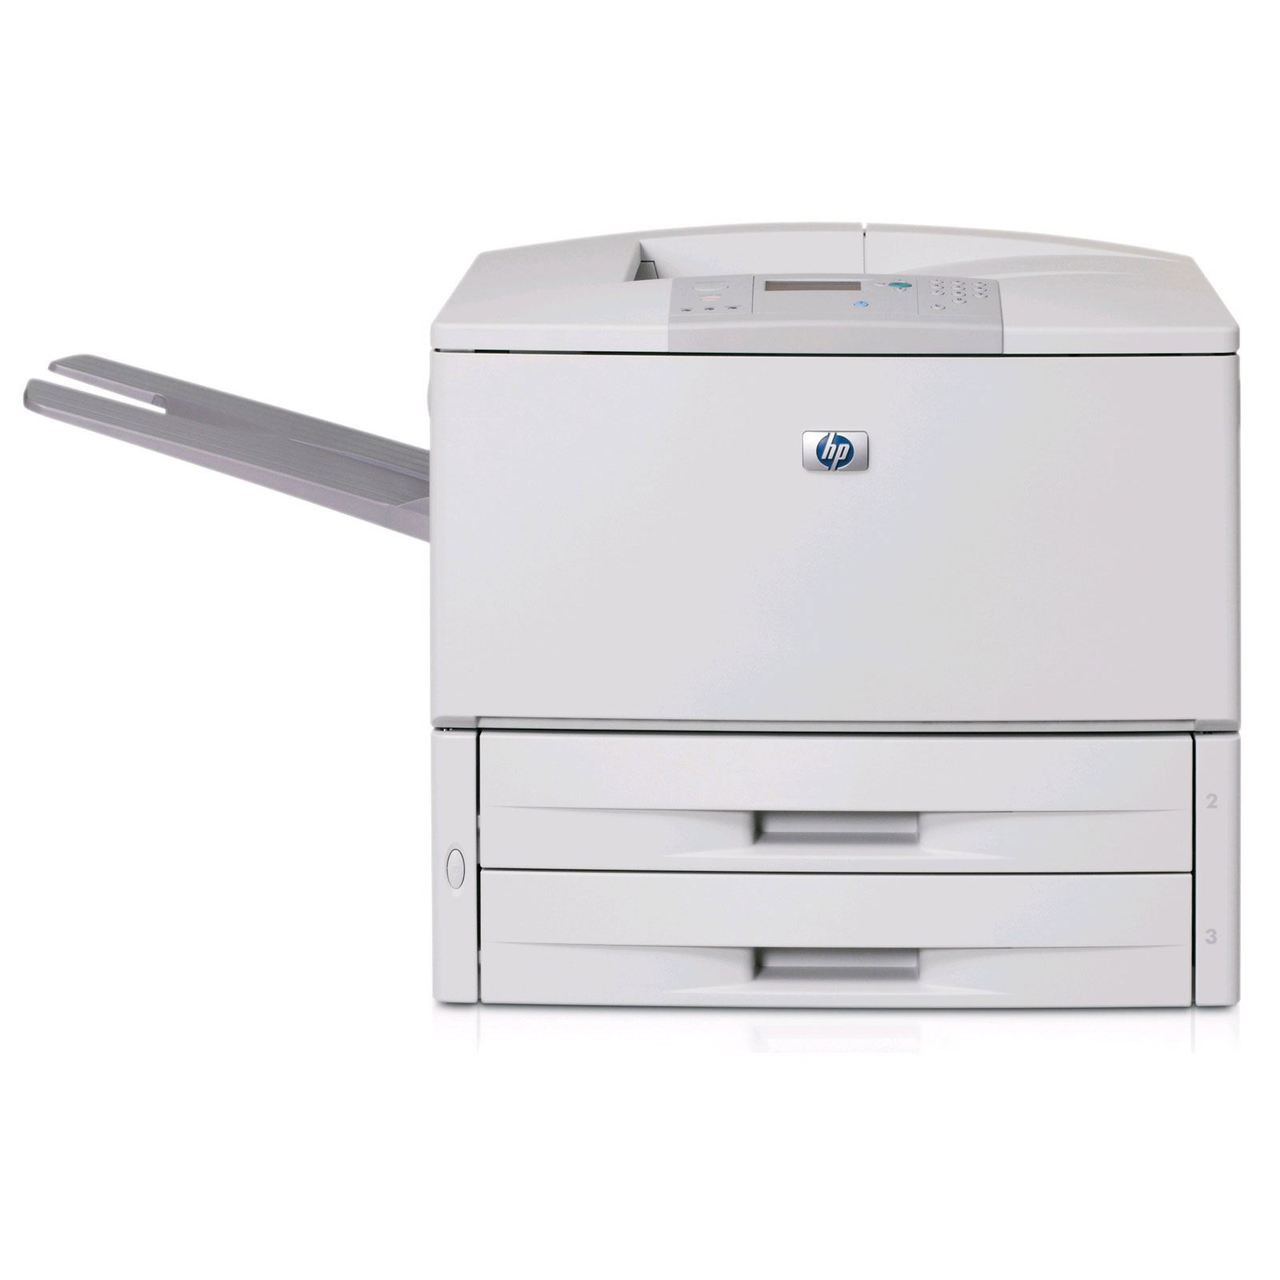 HP LaserJet 9040n - Q7698A - HP 11x17 Laser Printer for sale